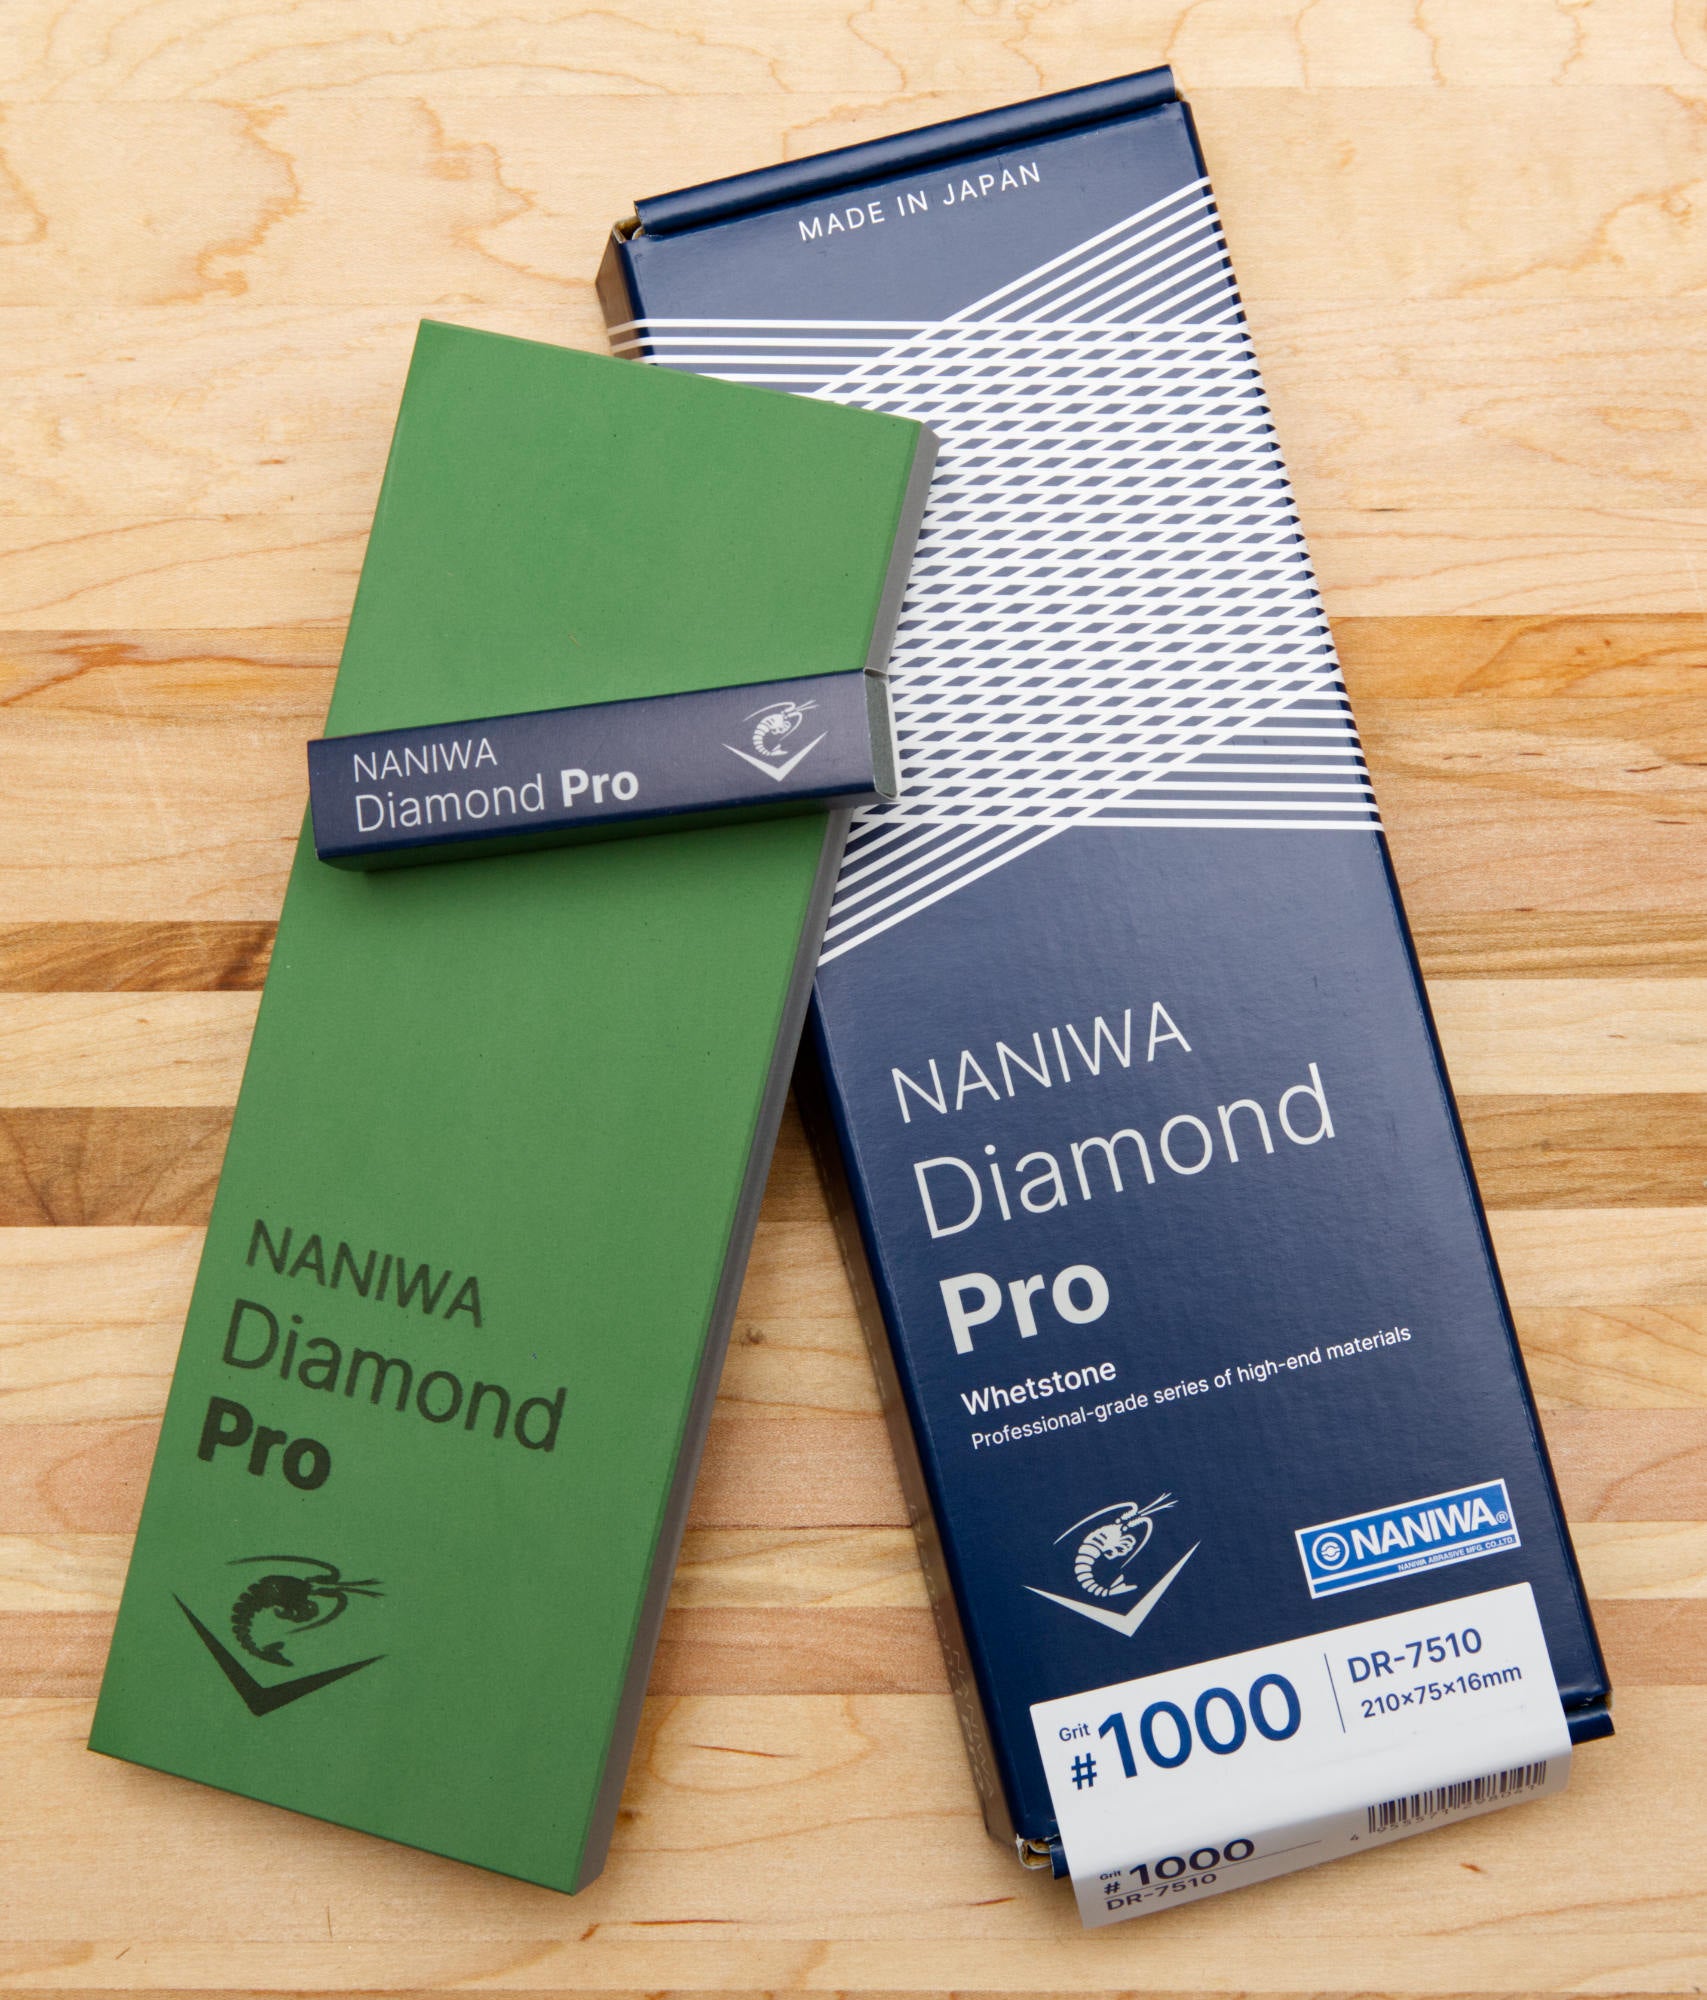 Naniwa Diamond Pro Stone, 1000 grit